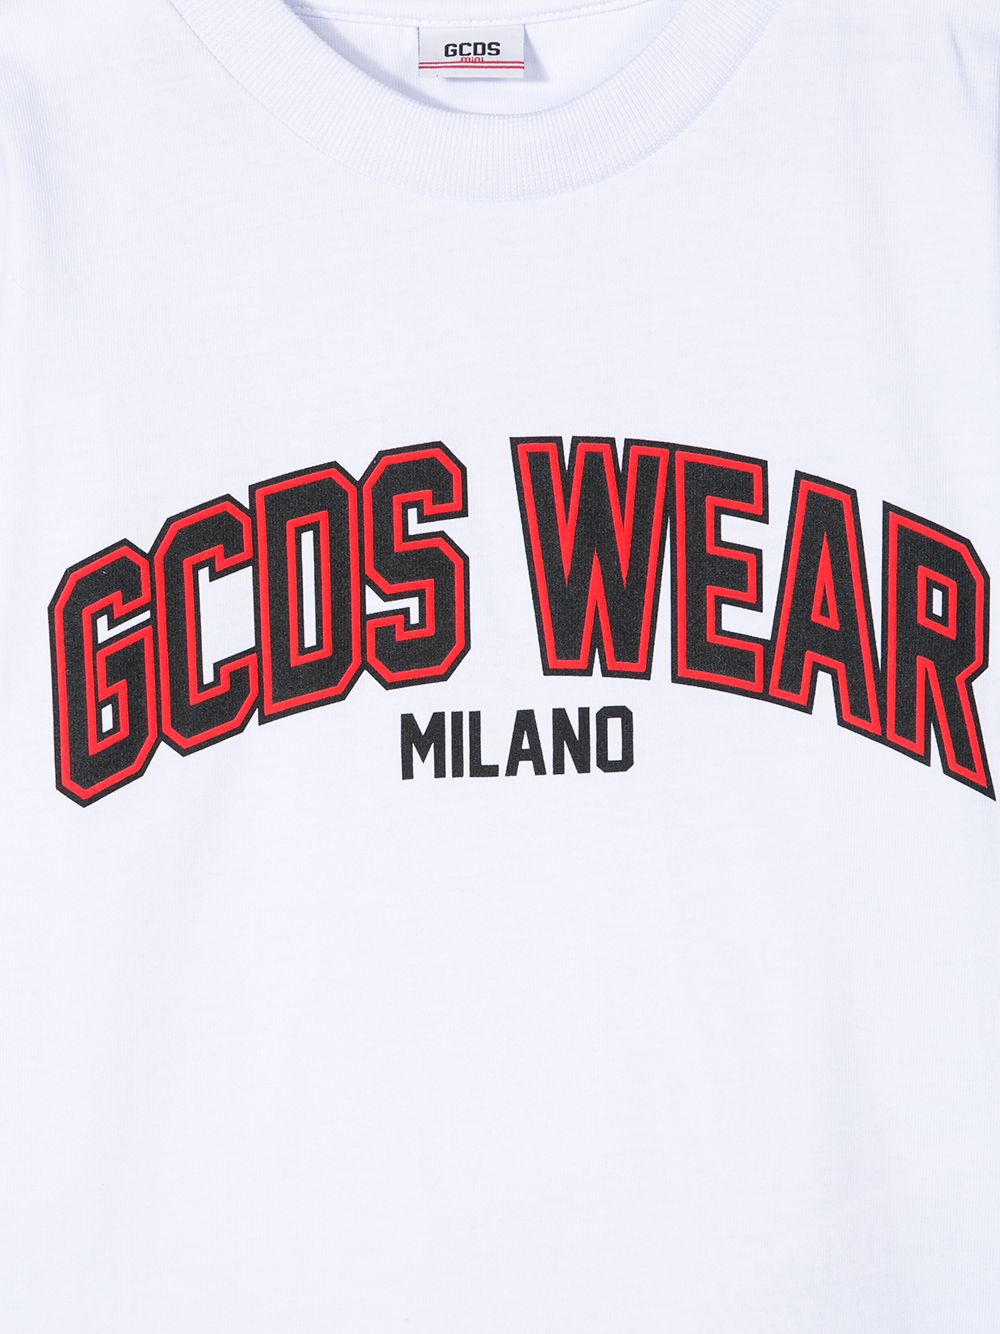 фото Gcds kids футболка с логотипом